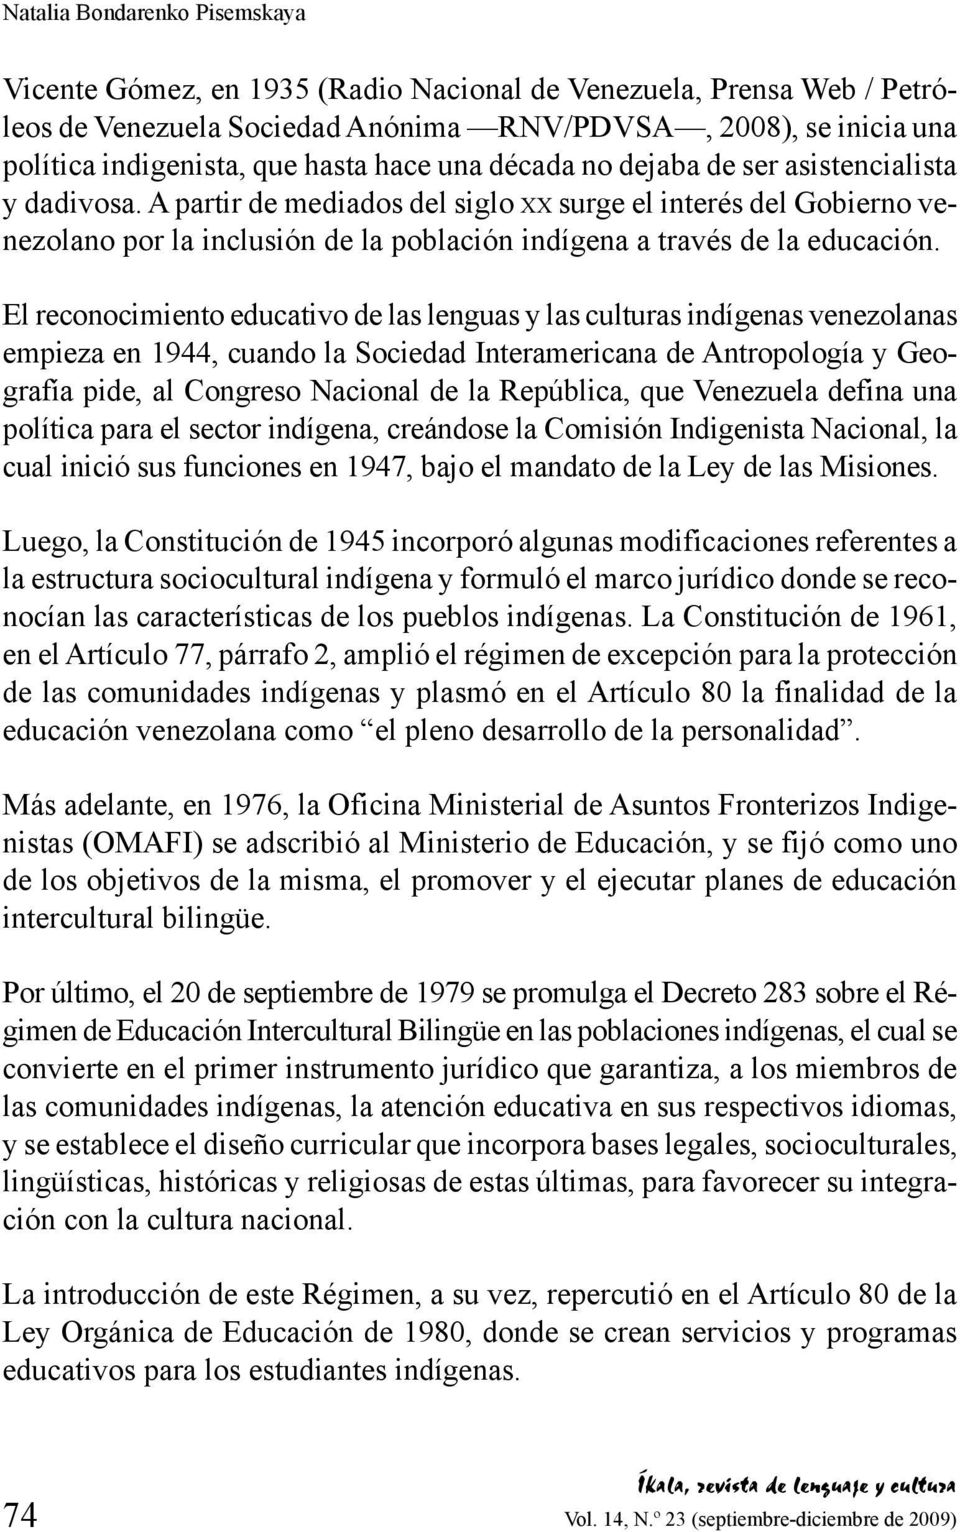 A partir de mediados del siglo x x surge el interés del Gobierno venezolano por la inclusión de la población indígena a través de la educación.